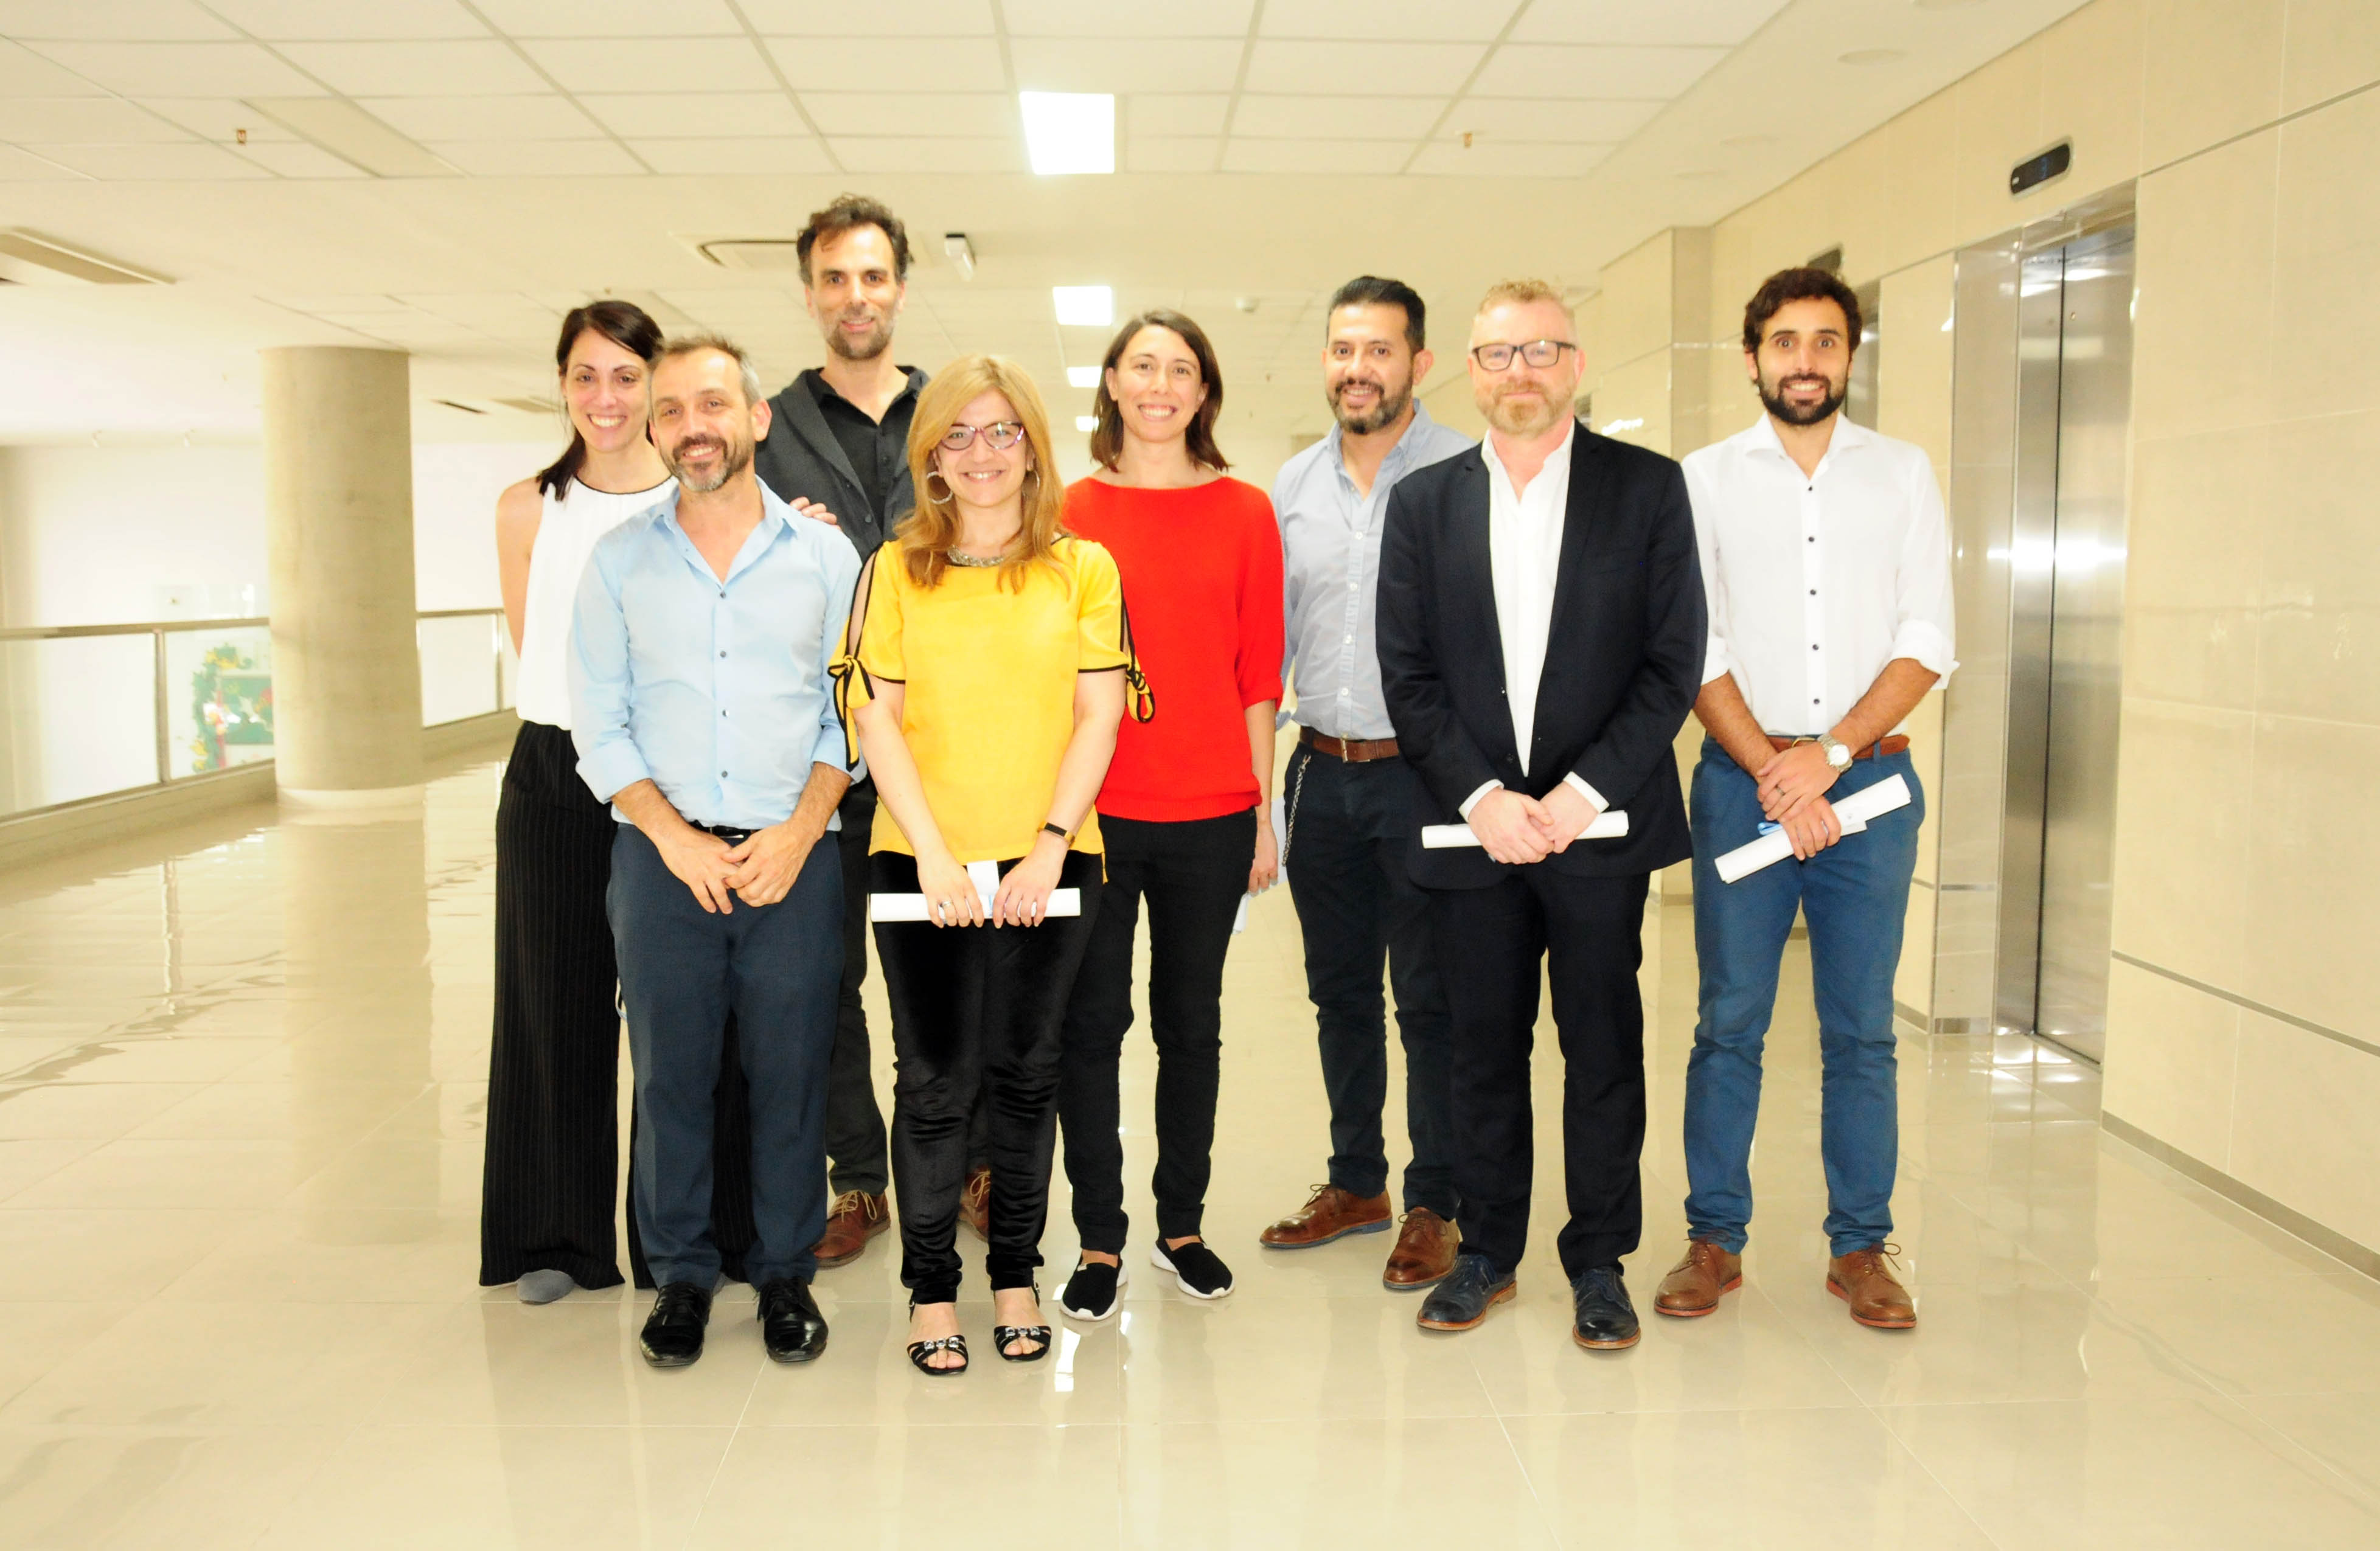 Aquí están, estos son: el equipo de investigadores argentinos que formaron parte de este importante trabajo. (Foto Télam)